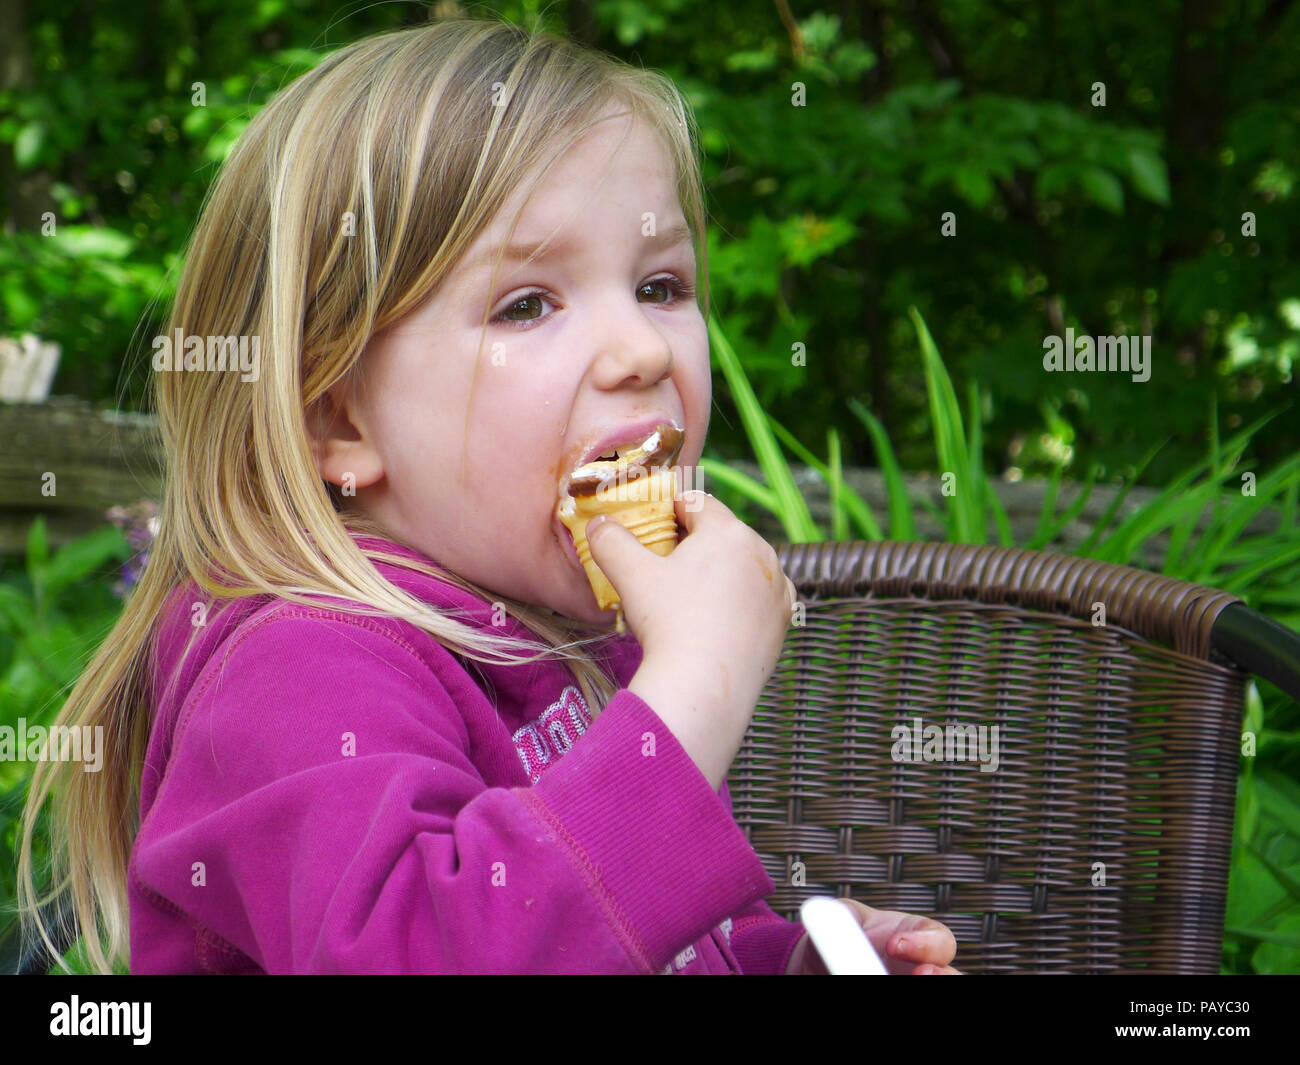 Ein kleines Mädchen (3 Jahre alt) ein Eis essen Stockfoto